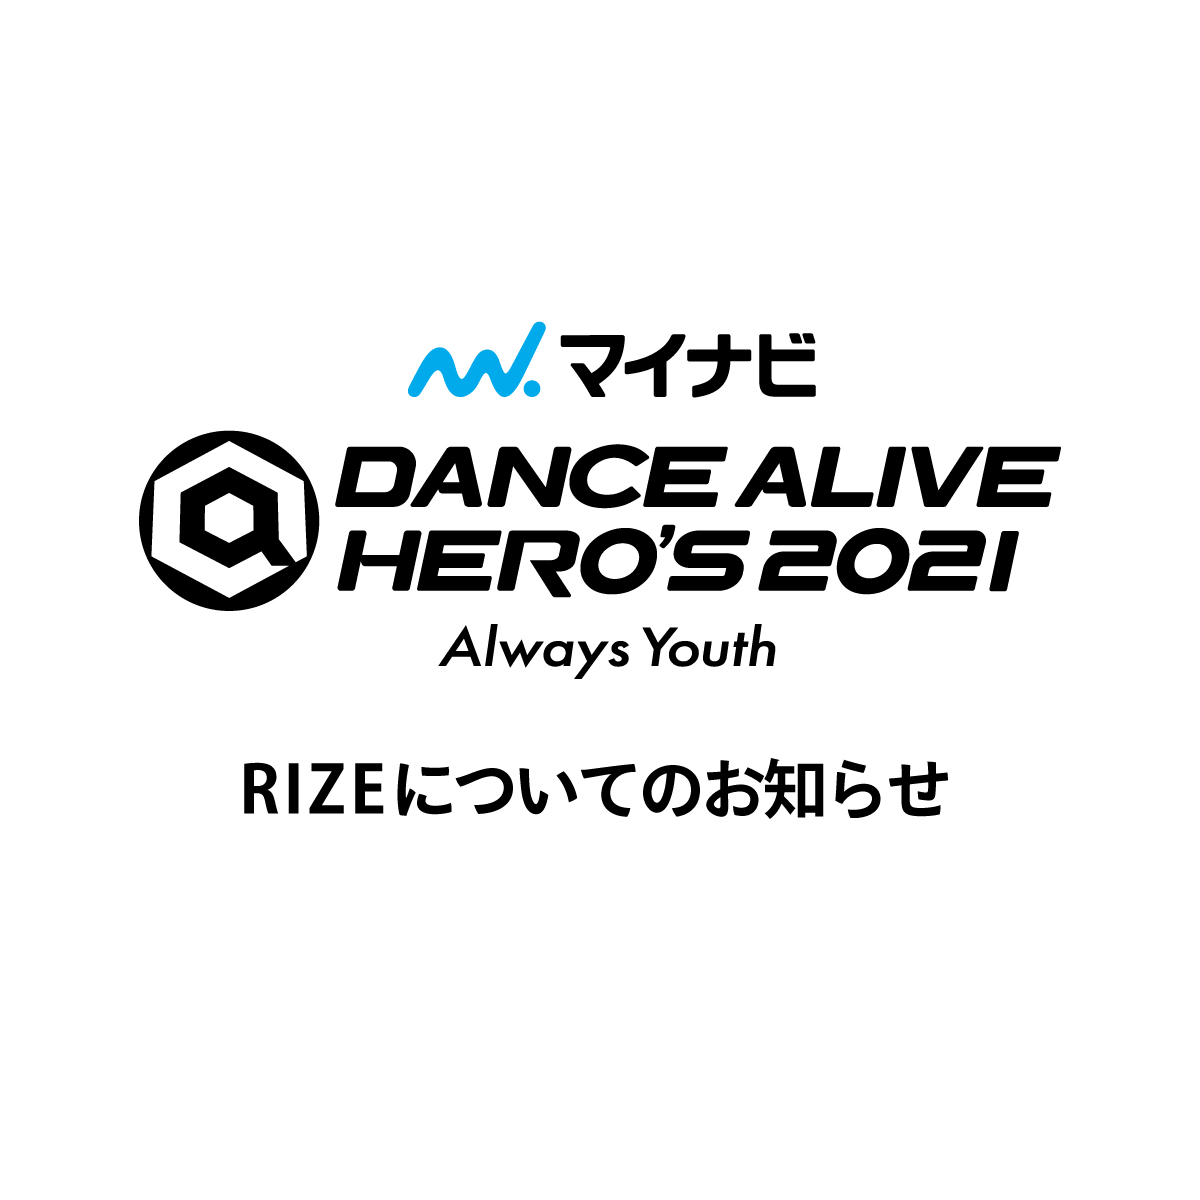 「マイナビDANCE ALIVE HERO’S 2021」RIZEについてのお知らせ